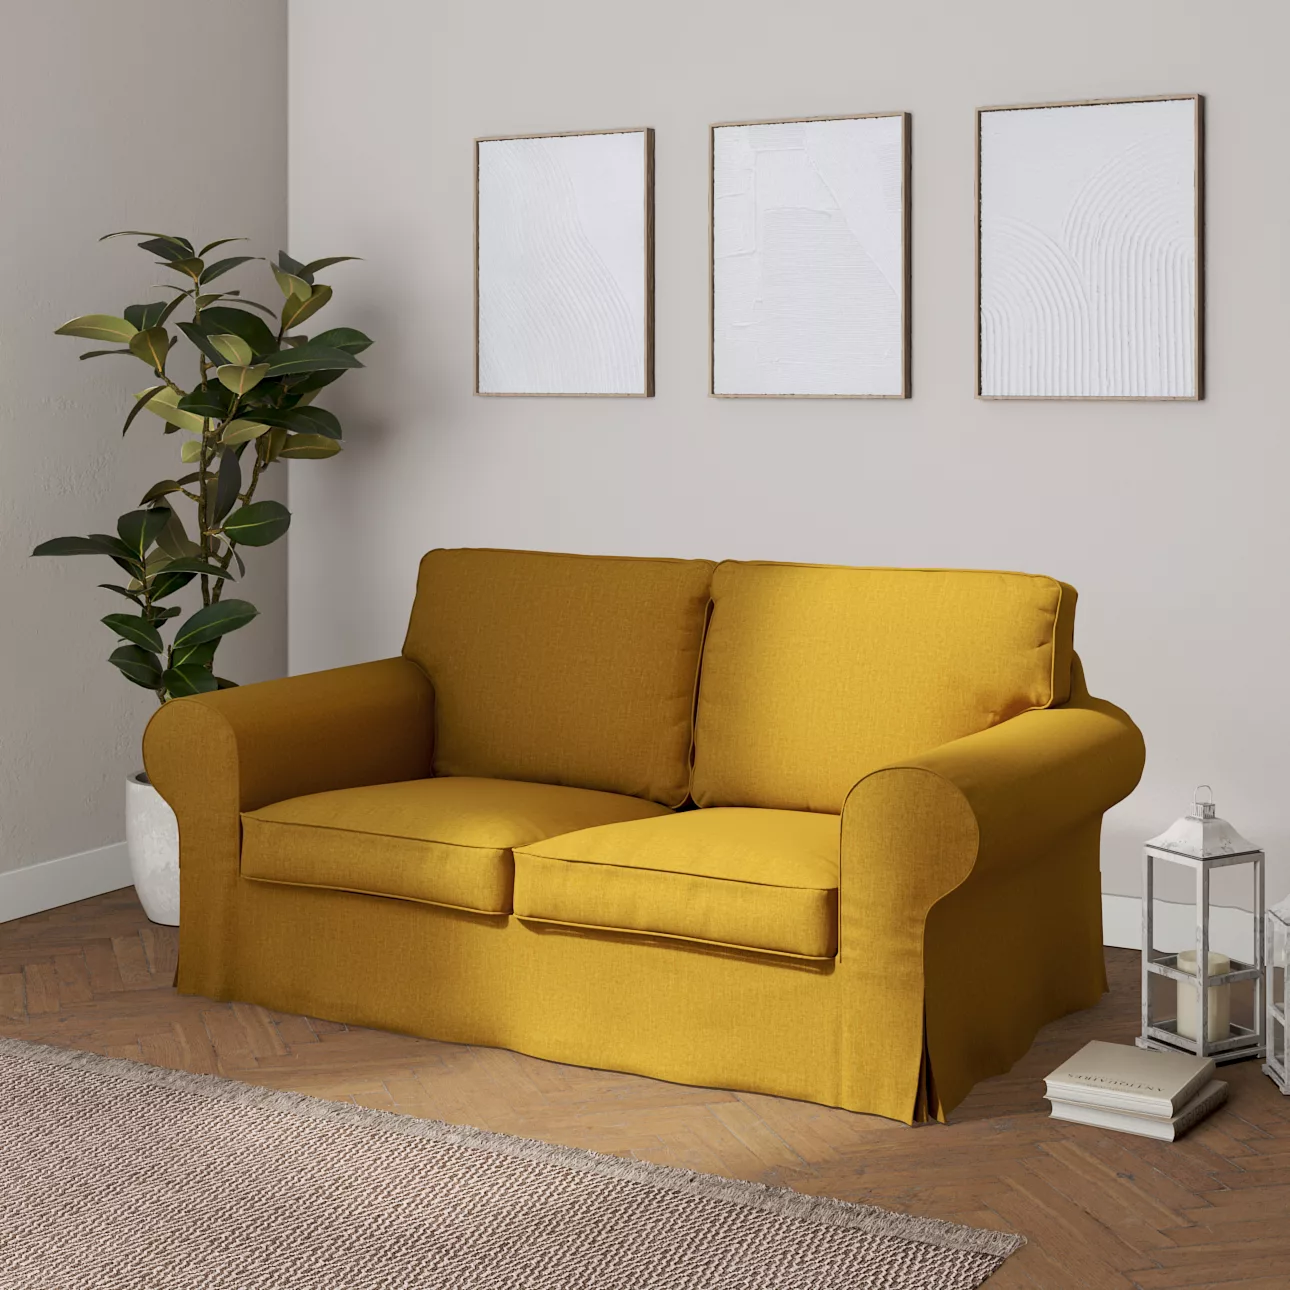 Bezug für Ektorp 2-Sitzer Schlafsofa NEUES Modell, senfgelb, Sofabezug für günstig online kaufen